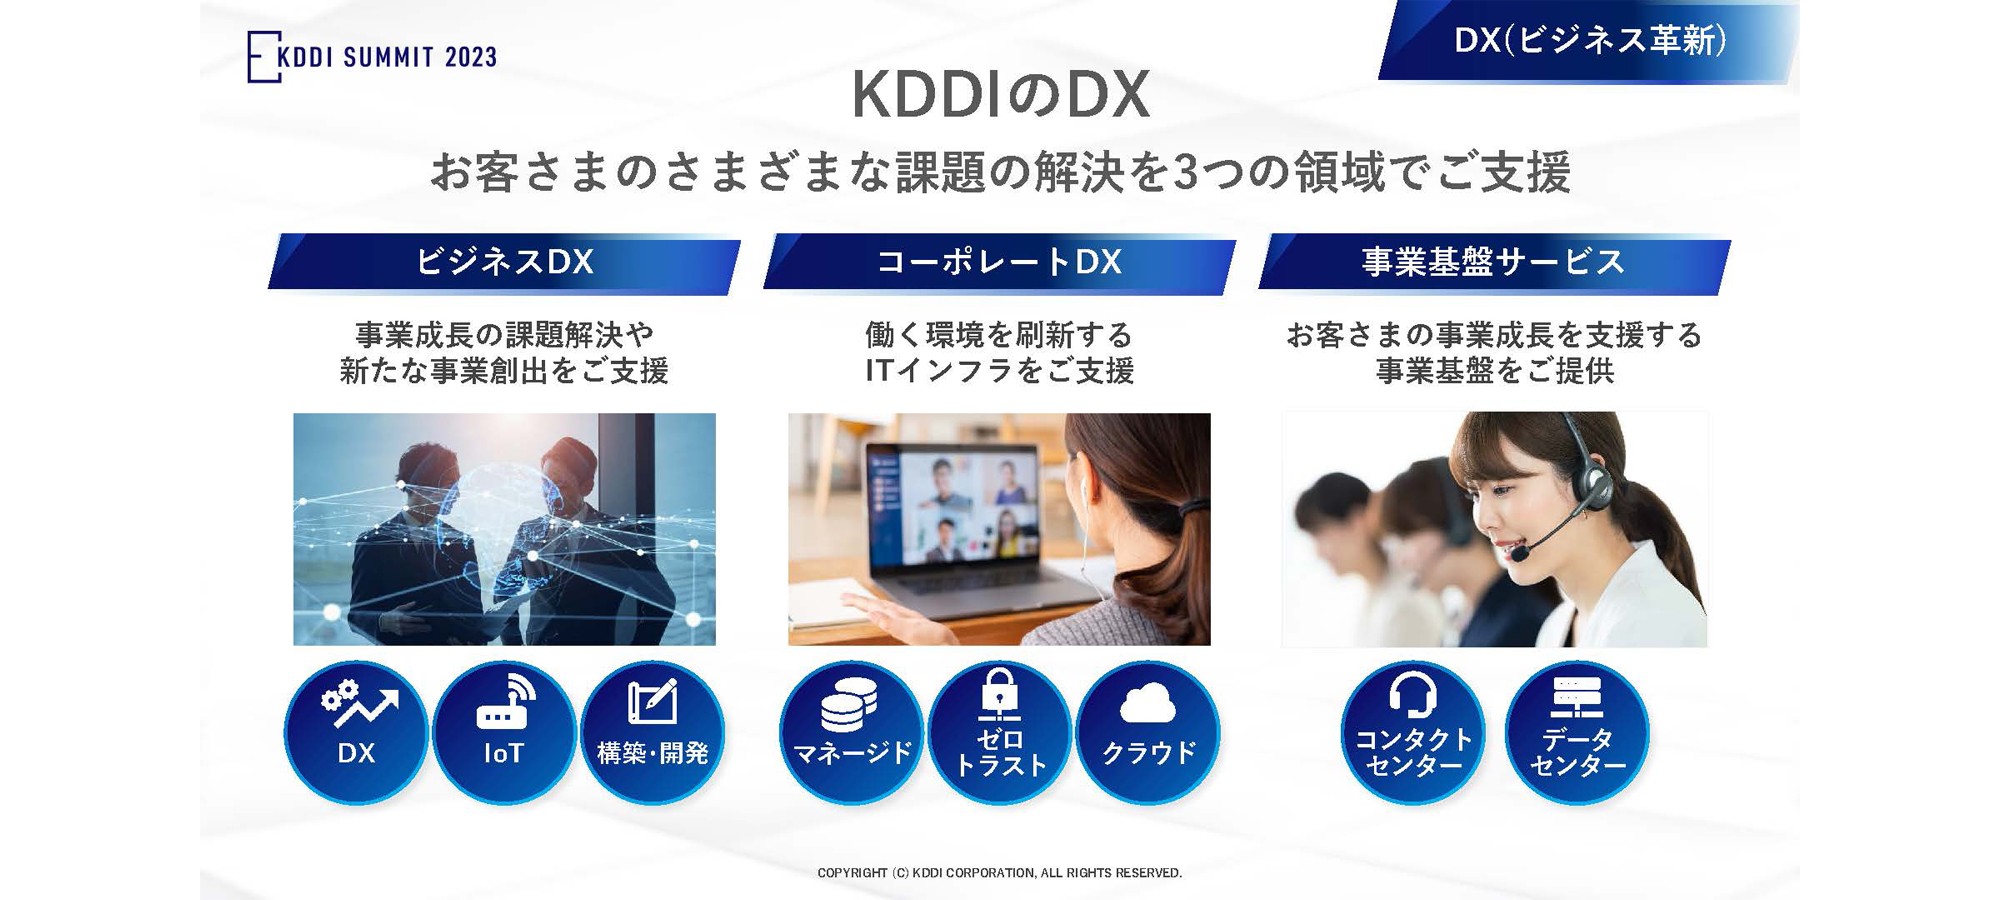 KDDIのDX (ビジネス革新) 、お客さまのさまざまな課題の解決を3つの領域でご支援、「ビジネスDX」事業成長の課題解決や新たな事業創出をご支援 (DX、IoT、構築・開発) 、「コーポレートDX」働く環境を刷新するITインフラをご支援 (マネージド、ゼロトラスト、クラウド) 、「事業基盤サービス」お客さまの事業成長を支援する事業基盤をご提供 (コンタクトセンター、データセンター)